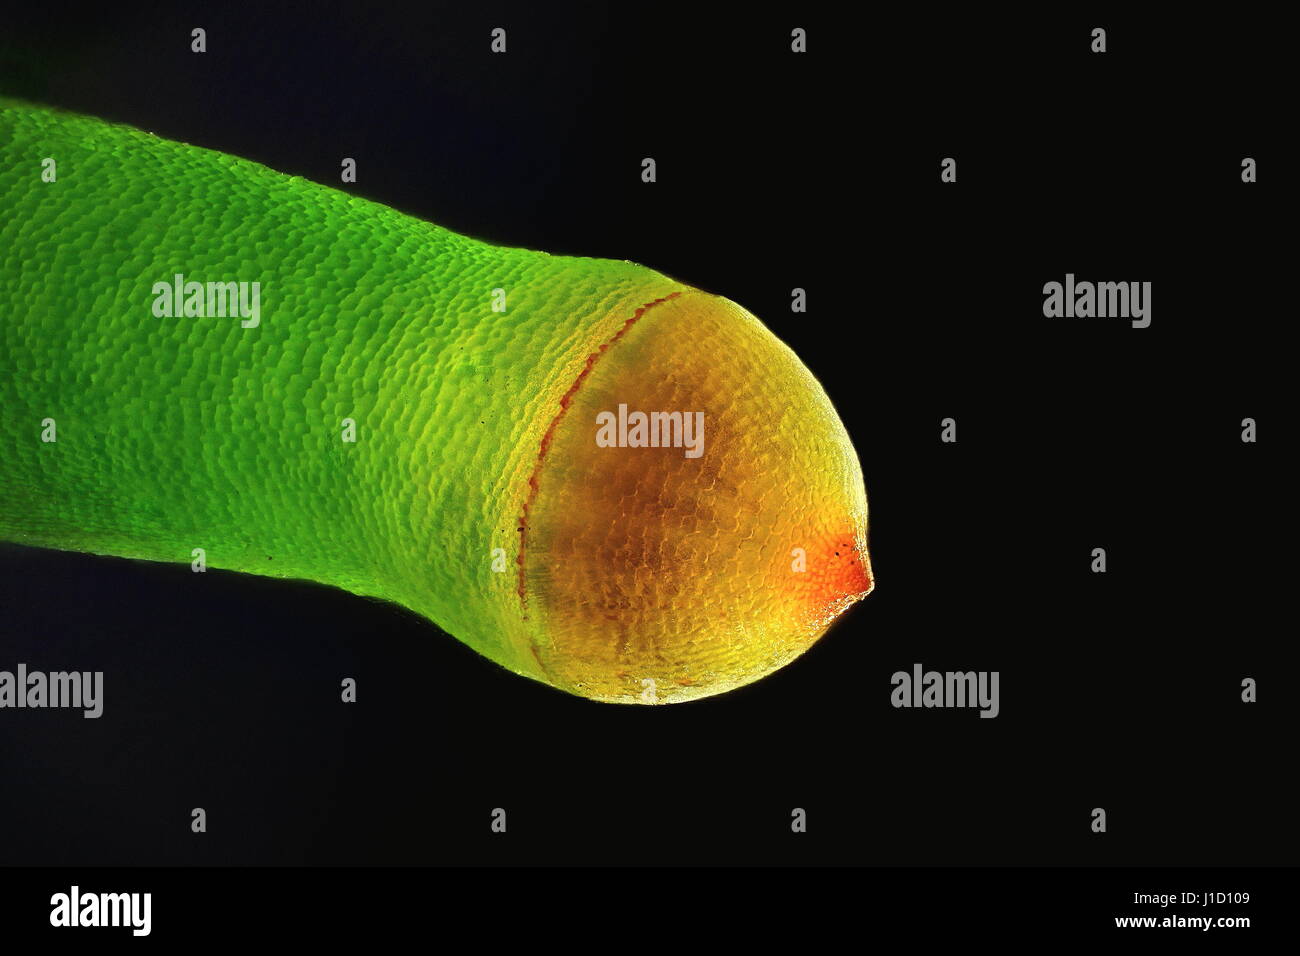 Capsule de spores de Plagiomnium affine, beaucoup de thym à gros fruits-moss, microscope droit Banque D'Images